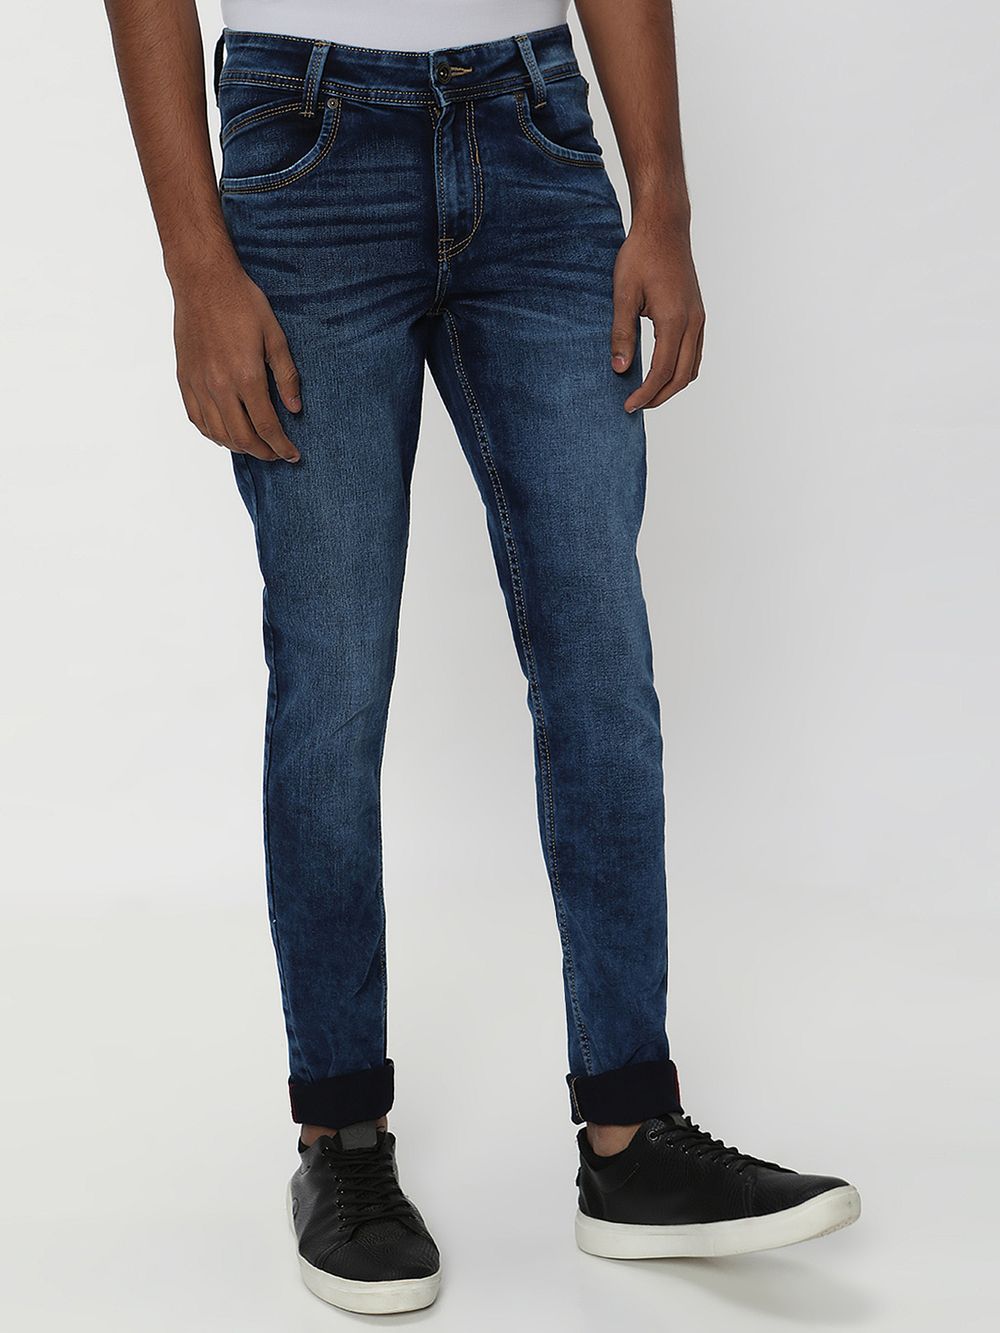 Indigo Blue Skinny Fit Originals Stretch Jeans